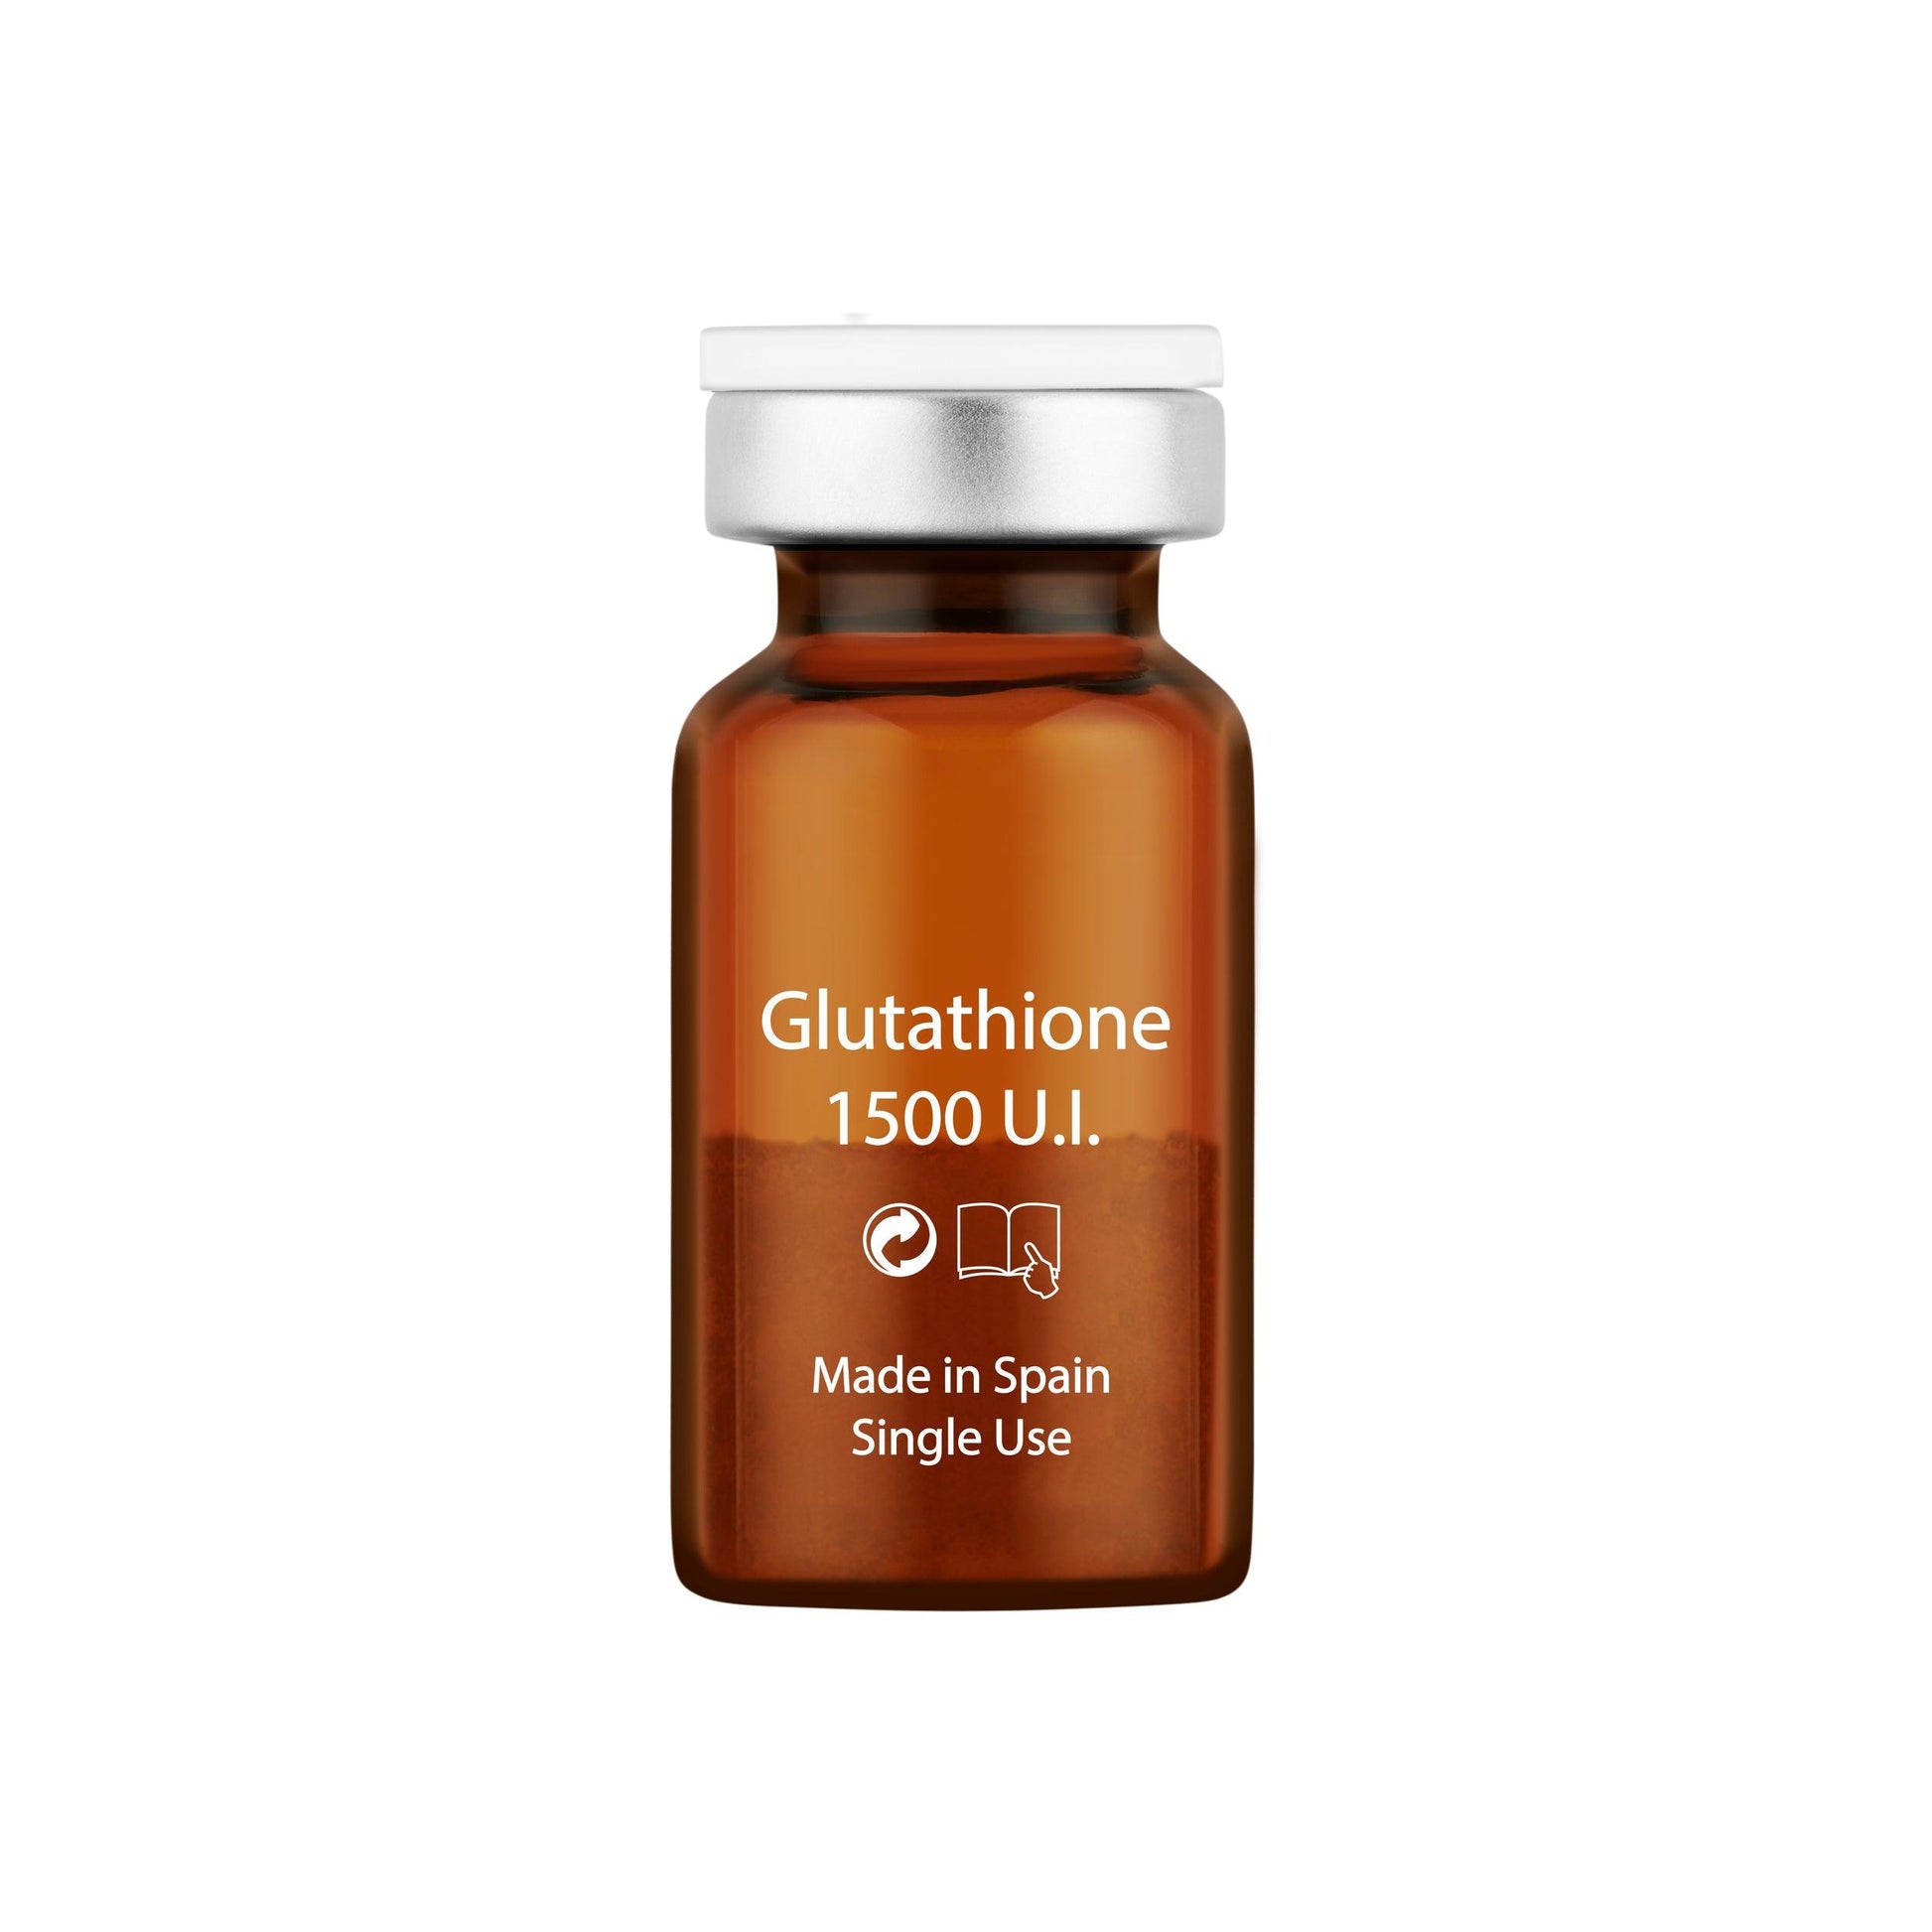 Glutathione 1500 U.I. - MCCM Medical Cosmetics